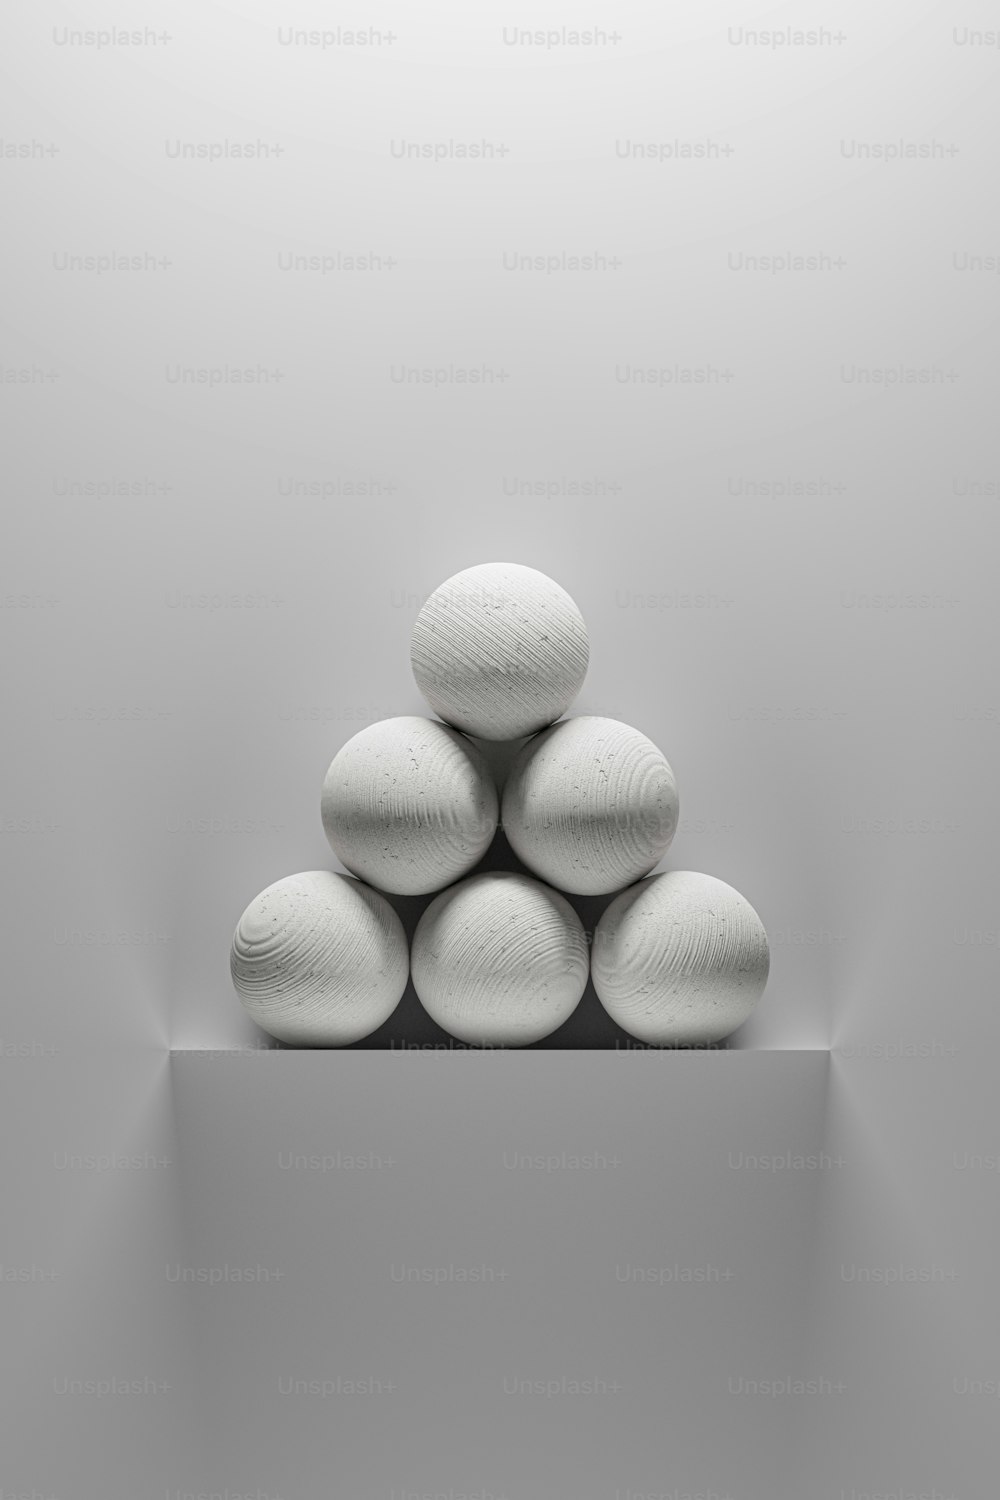 Ein Haufen weißer Steine sitzt auf einem Regal